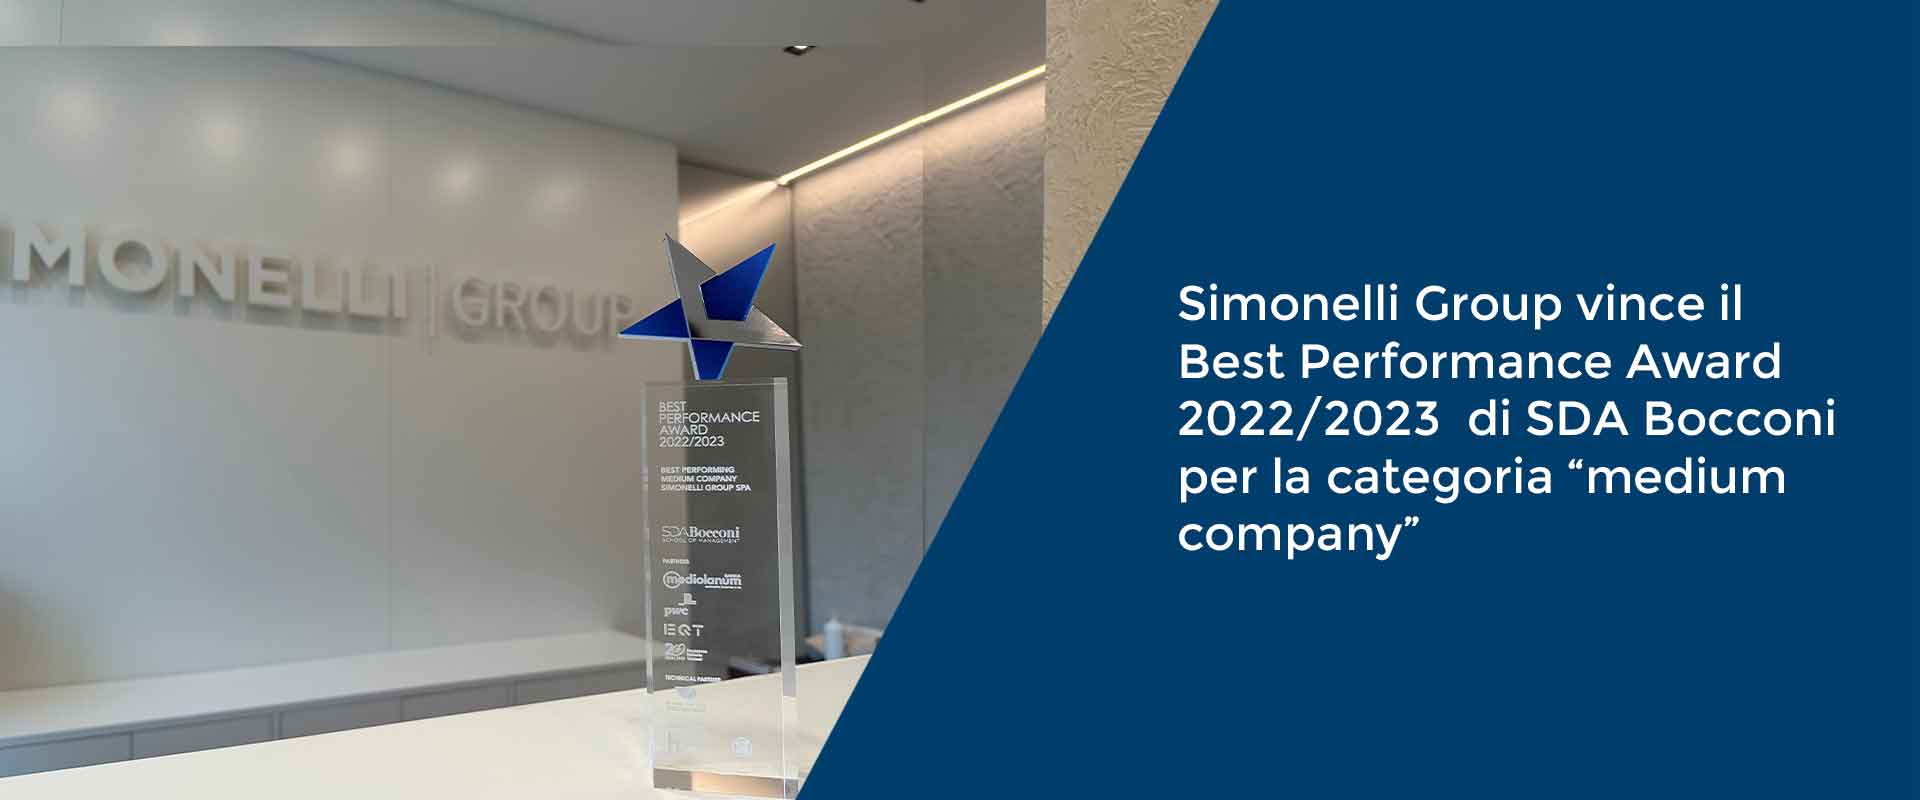 Simonelli Group vince il Best Performance Award 2022/2023  di SDA Bocconi per la categoria “medium company”